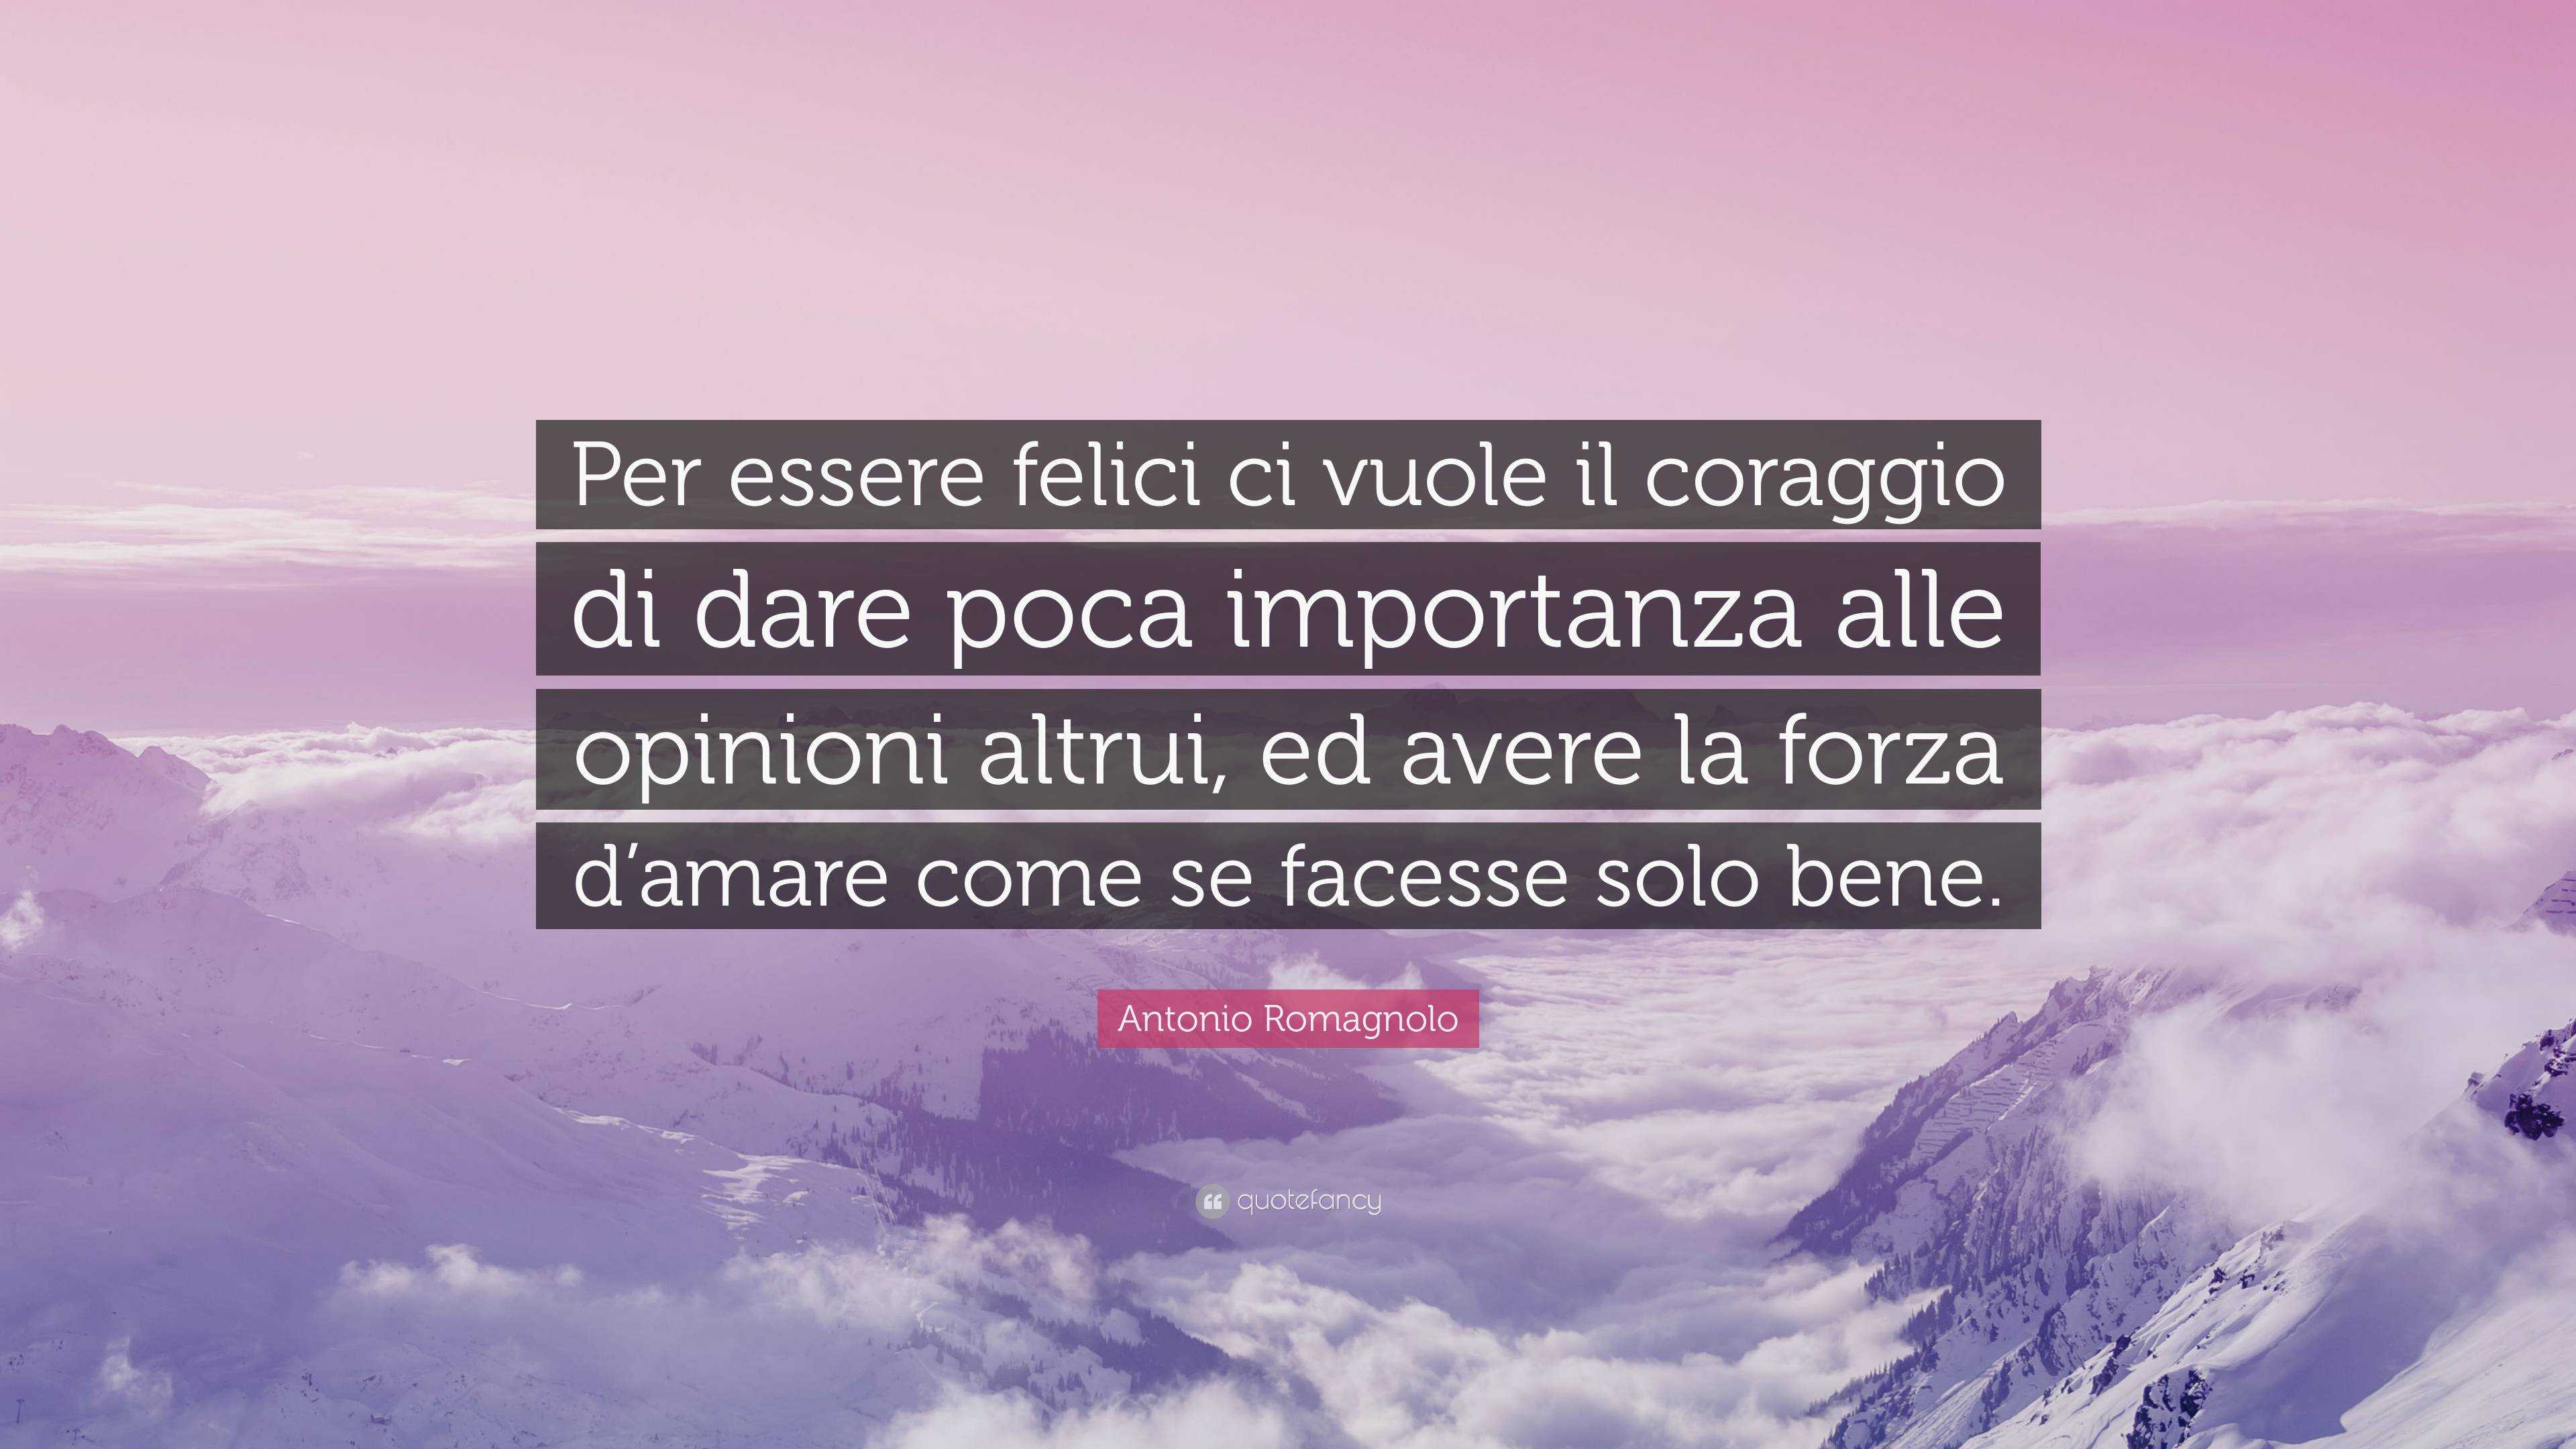 Antonio Romagnolo Quote: “Per essere felici ci vuole il coraggio di dare  poca importanza alle opinioni altrui, ed avere la forza d'amare come se  f”